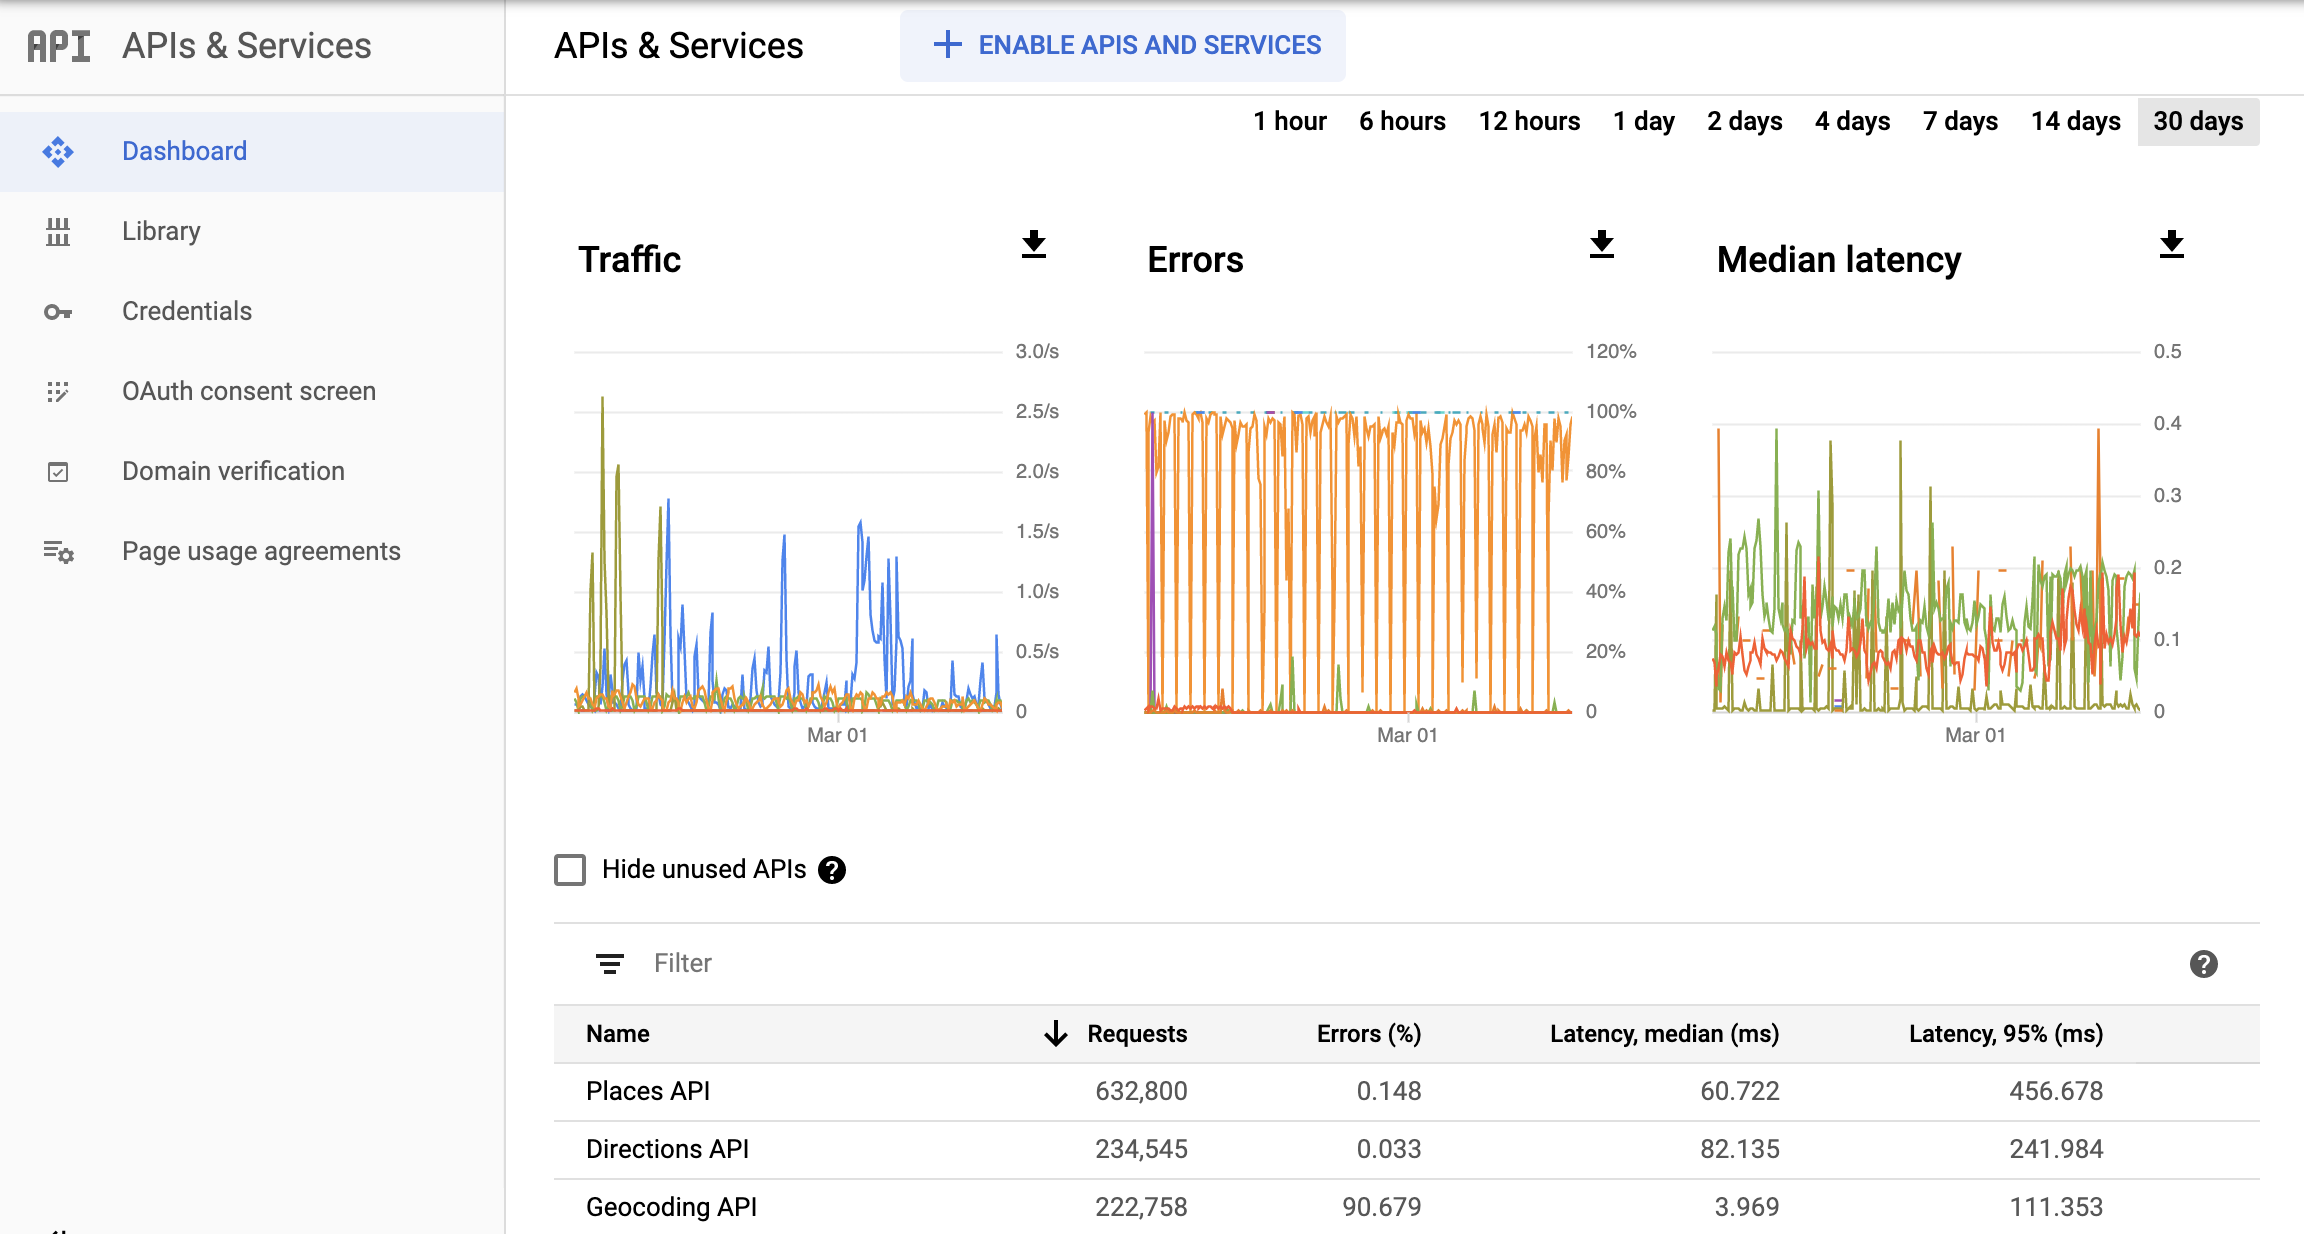 Captura de tela da página de monitoramento de APIs no Console do Google Cloud mostrando o painel do relatório de APIs e serviços. Há gráficos diferentes para "Tráfego", "Erros" e "Latência mediana". Esses gráficos podem mostrar dados de uma hora até 30 dias.